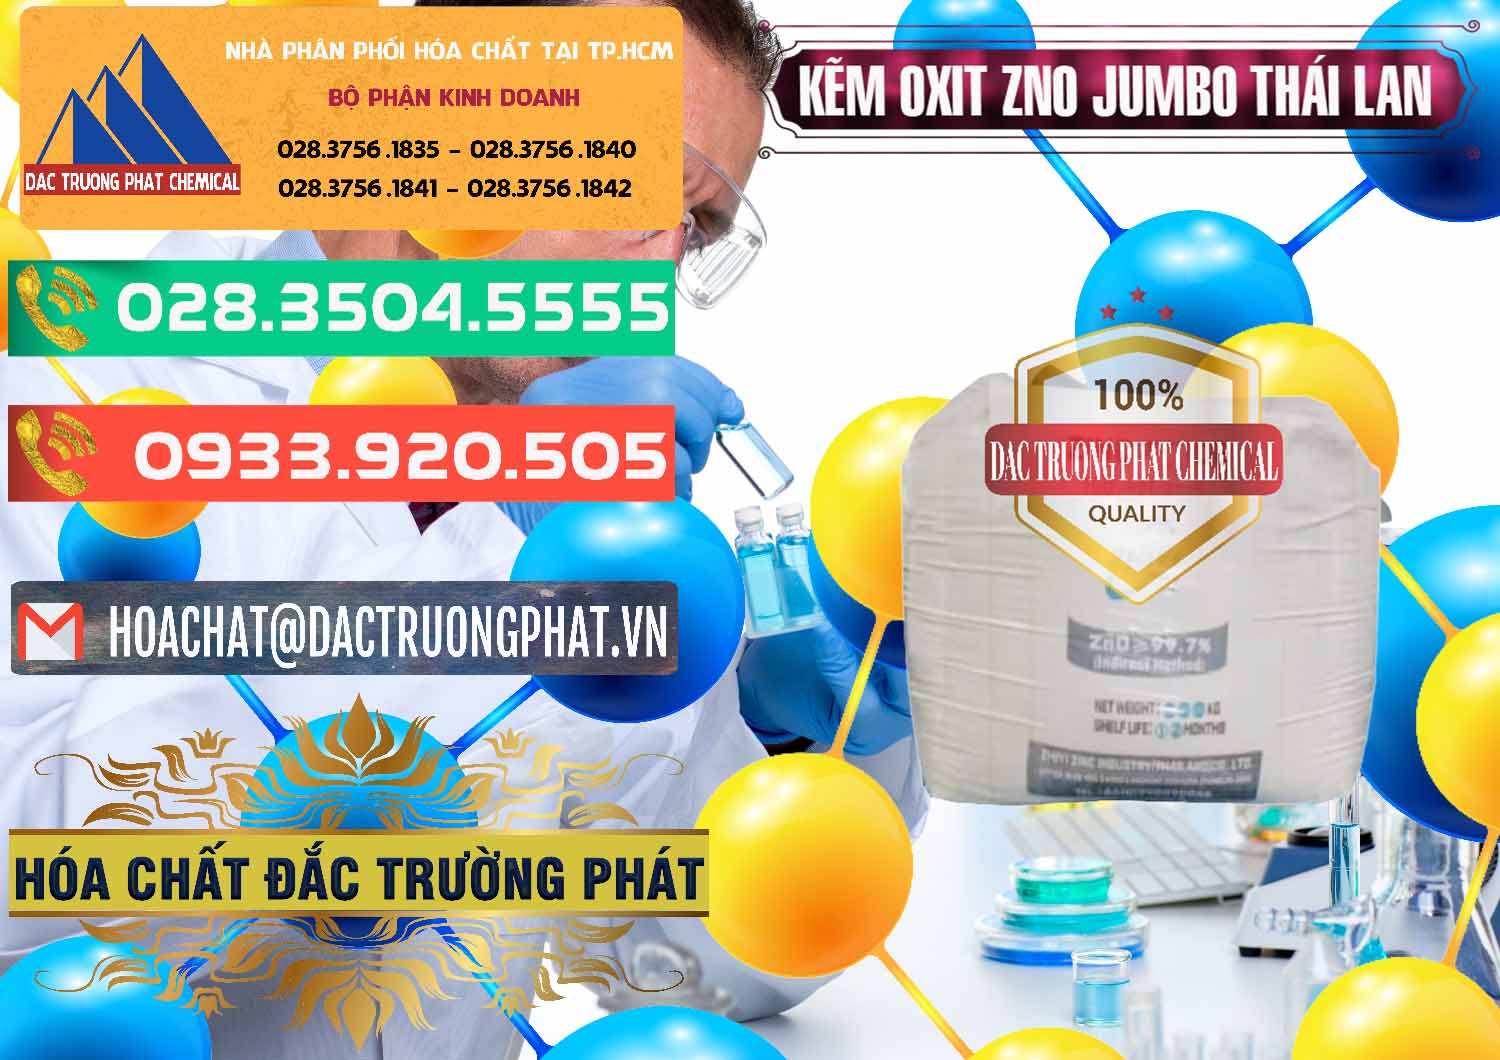 Nơi chuyên bán _ cung cấp Zinc Oxide - Bột Kẽm Oxit ZNO Jumbo Bành Thái Lan Thailand - 0370 - Cung cấp và bán hóa chất tại TP.HCM - congtyhoachat.com.vn